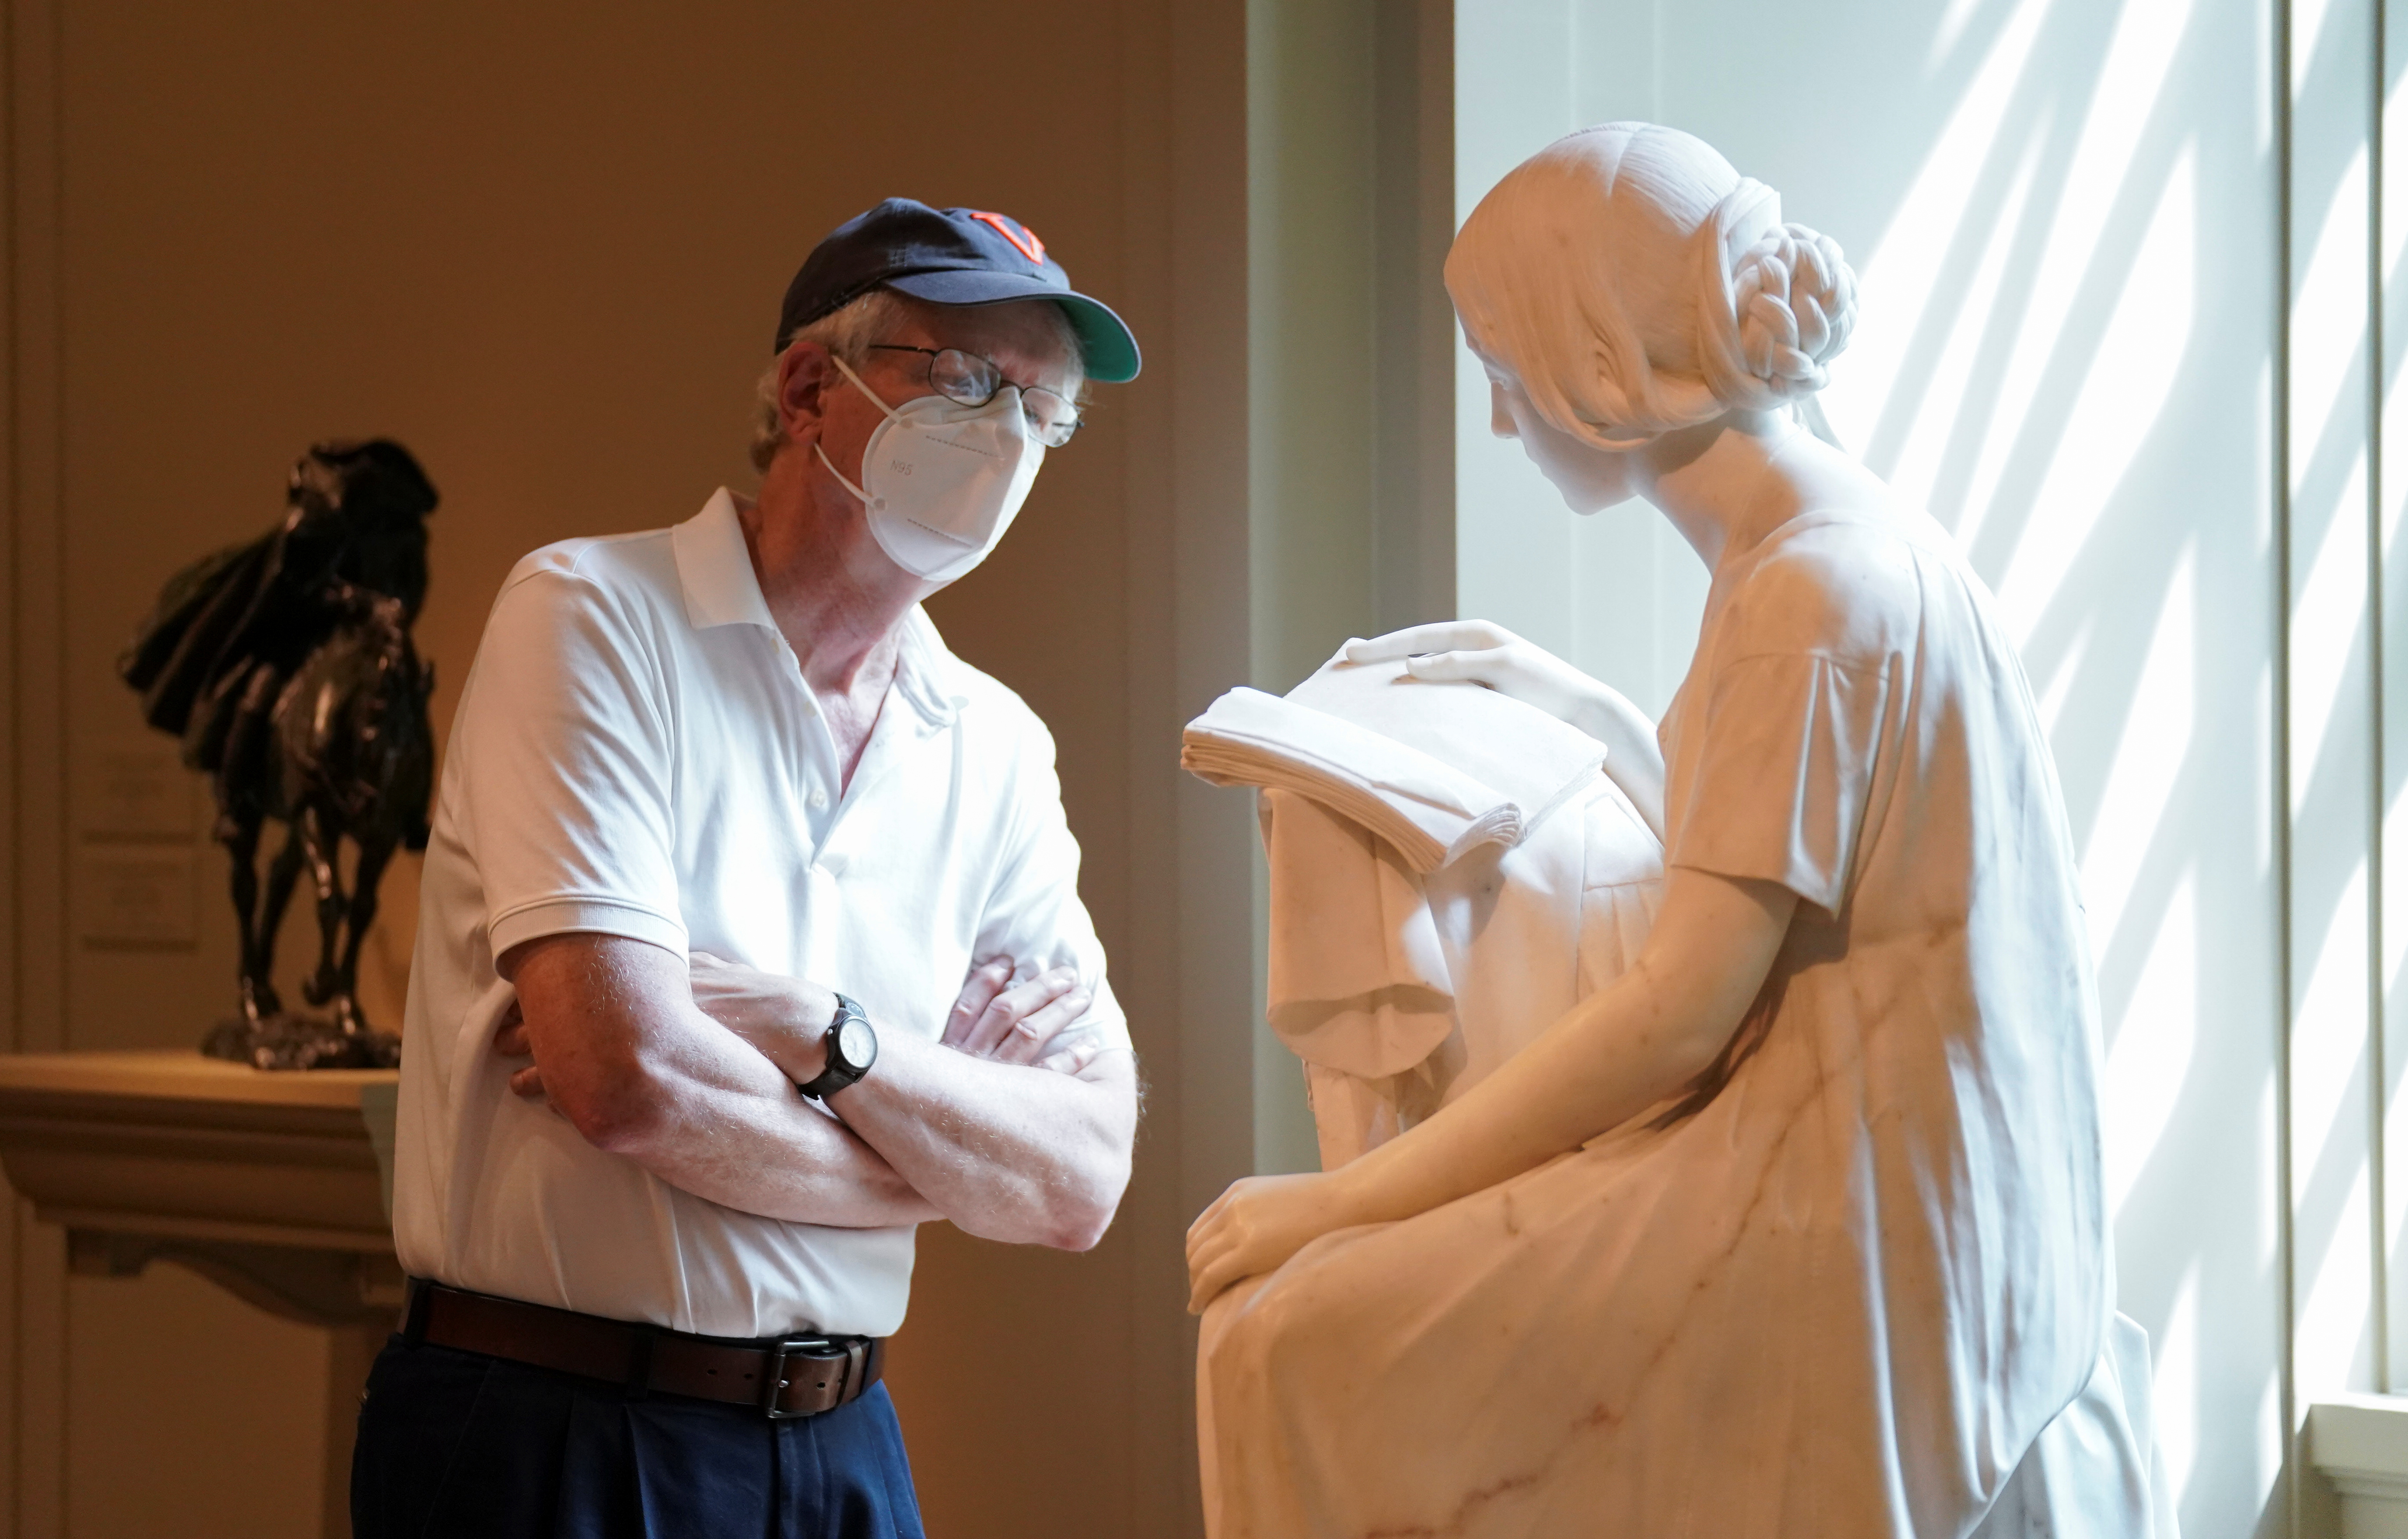 Un visitante observa la escultura "La niña lectora" de Pietro Magni, en la National Gallery of Art de Washington, que reabrió con todos los recaudos en julio luego de meses de cierre por la pandemia. (REUTERS/Kevin Lamarque)